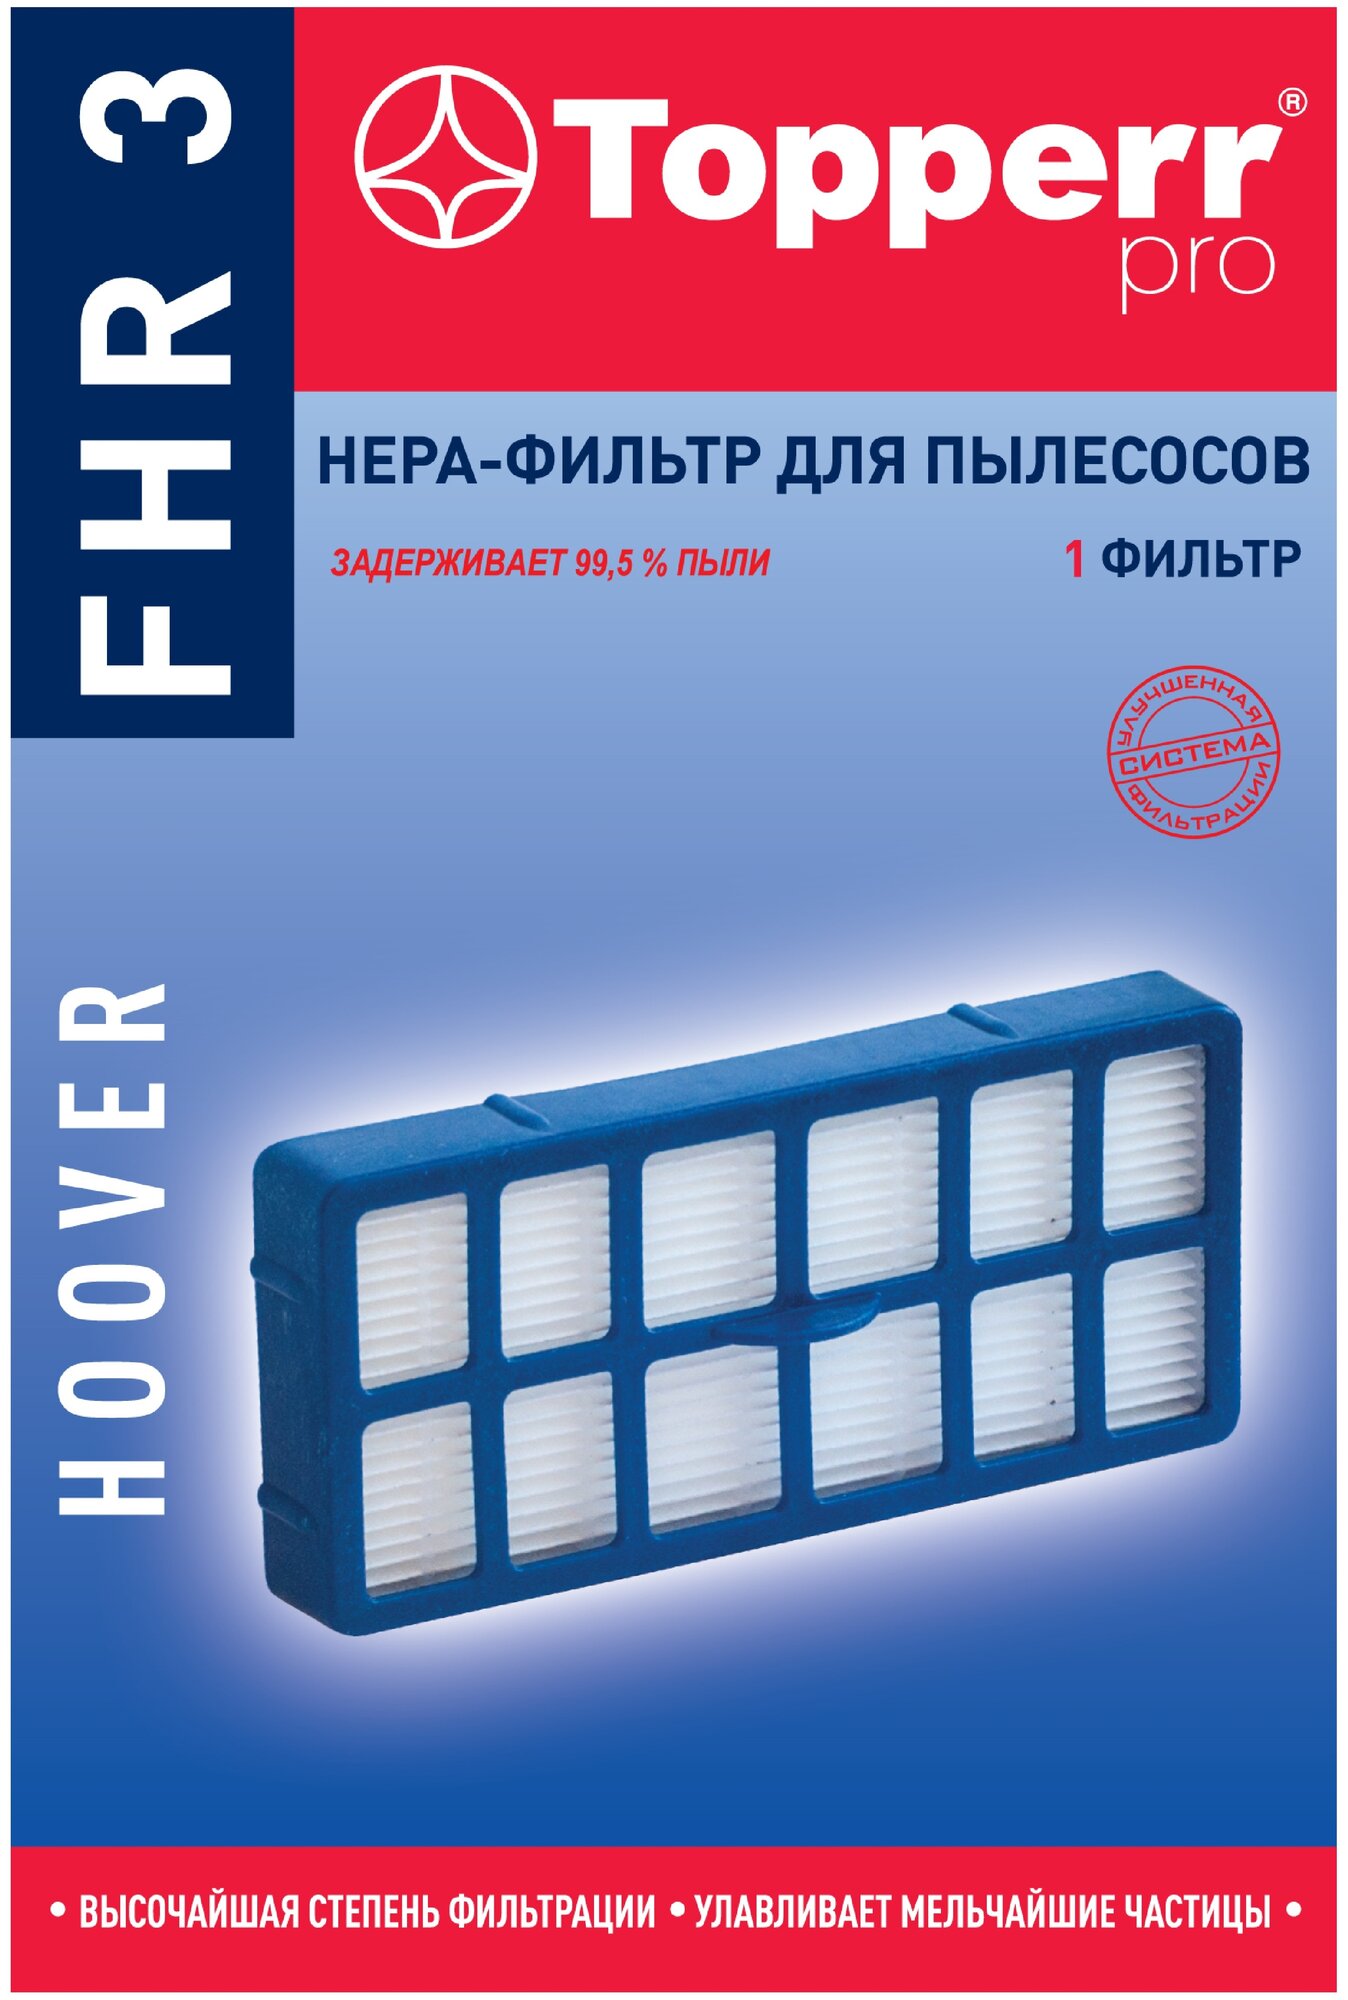 Topperr HEPA-фильтр FHR 3